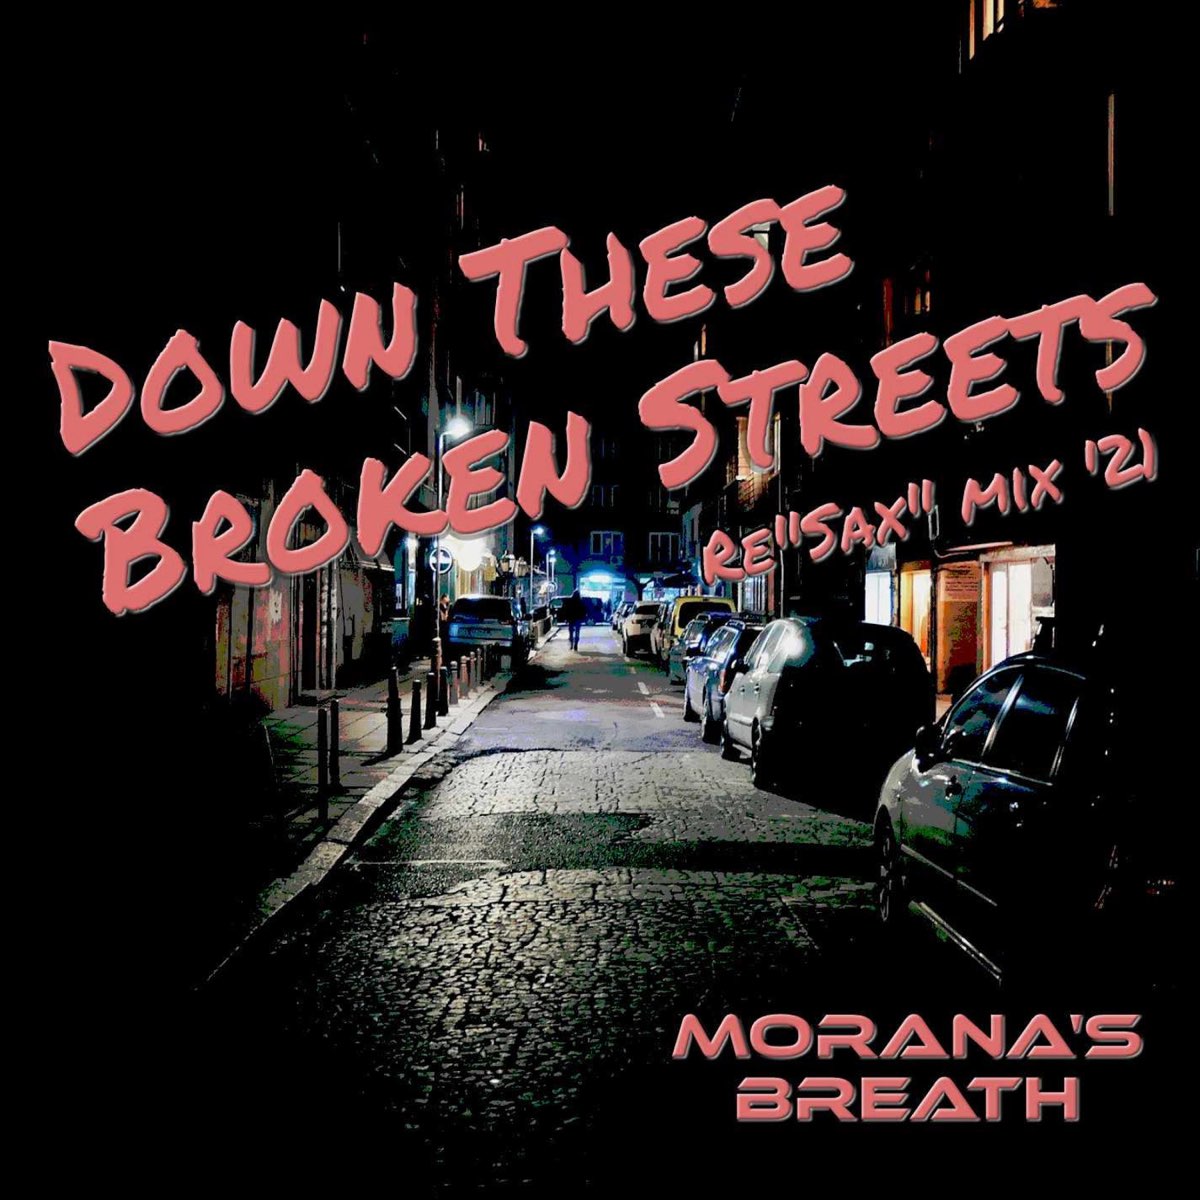 Broken Street. Streets of broken Lights. Broken streets